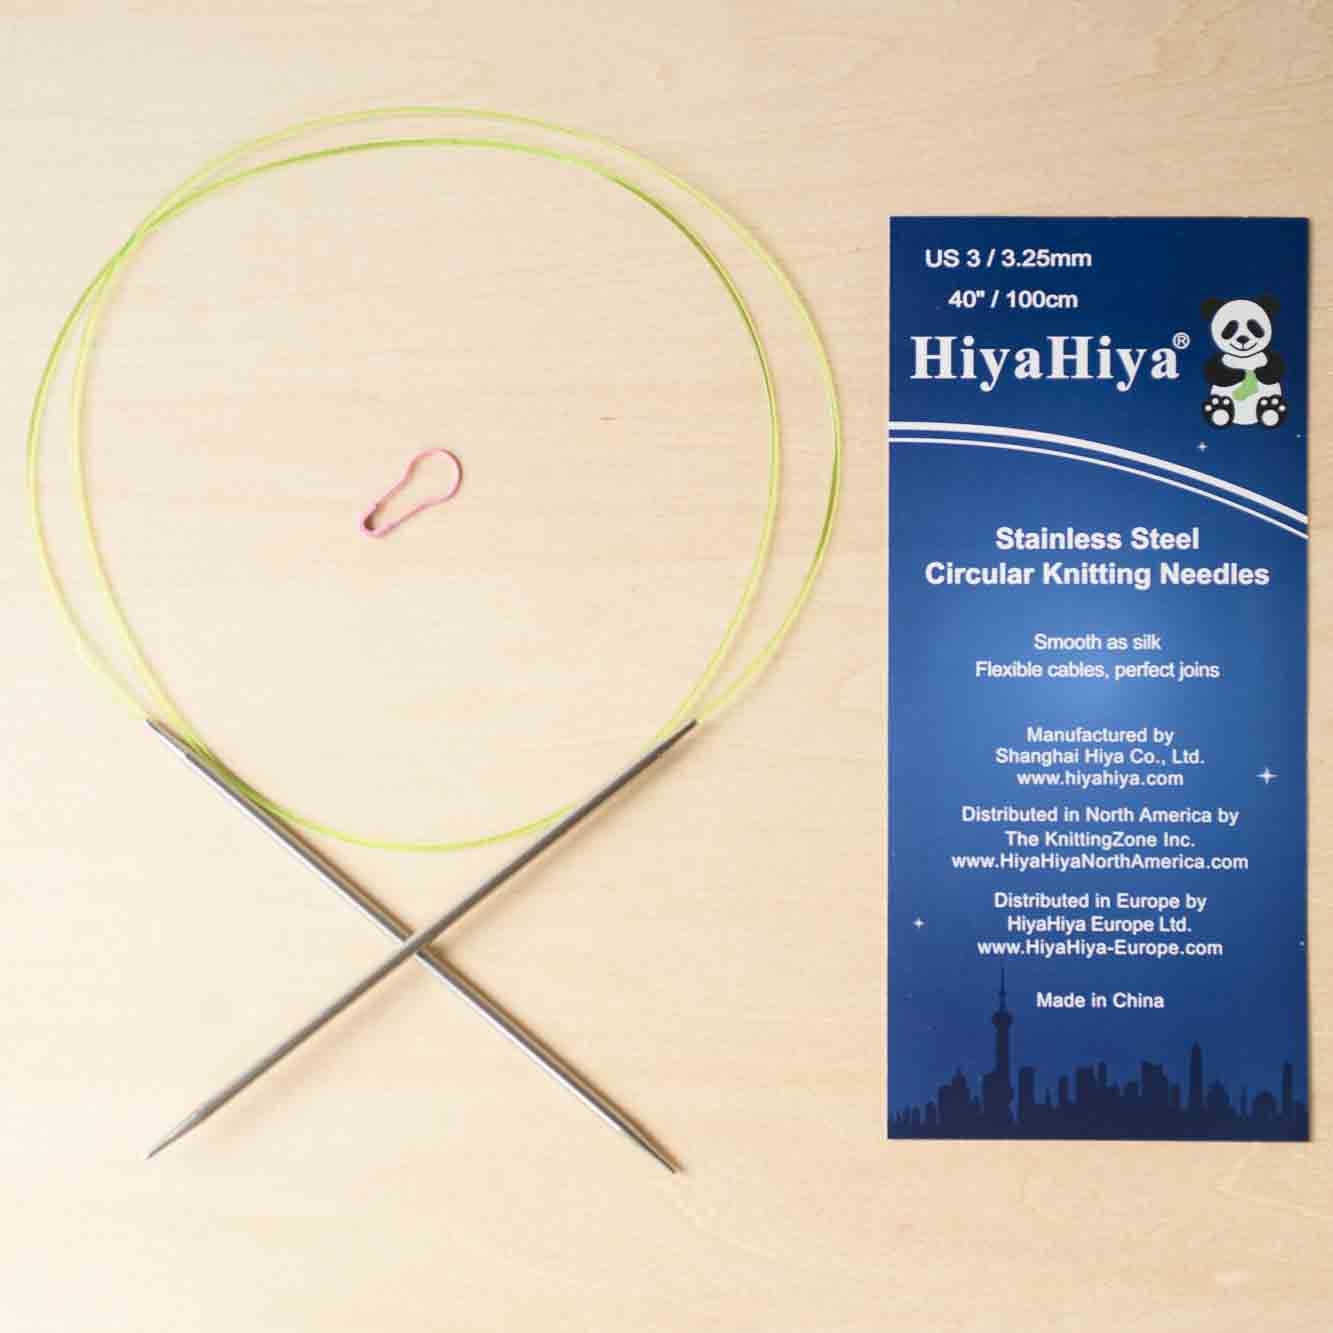 HiyaHiya Stainless Circular Needle 100cm